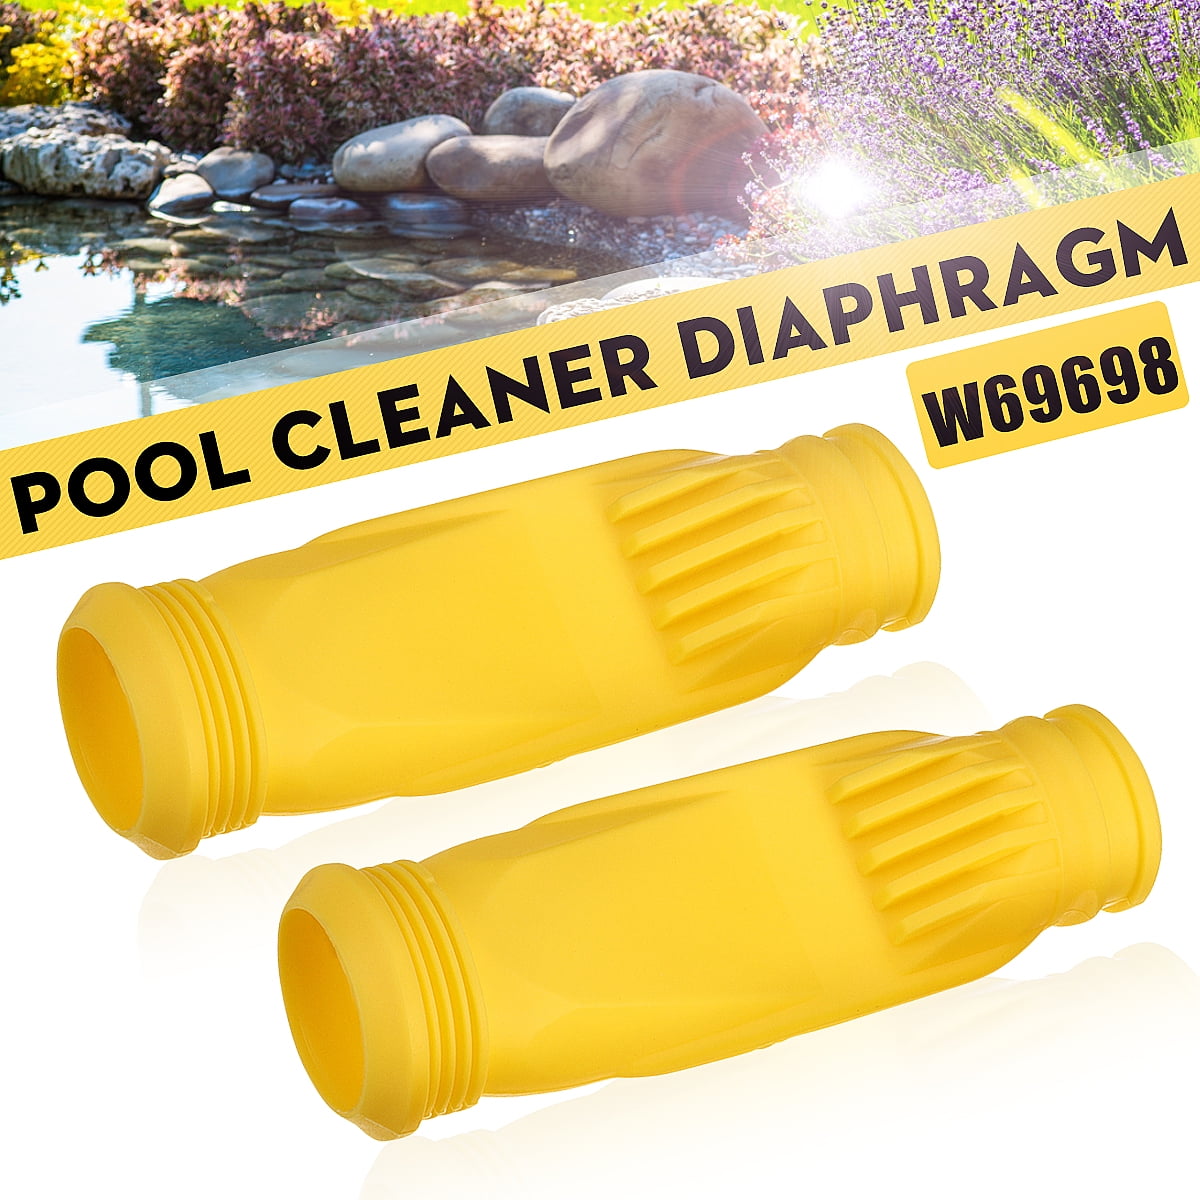 2X Pool Cleaner Diaphragms Kit For Zodiac Baracuda G3 G4 W69698 W81701 W81700 